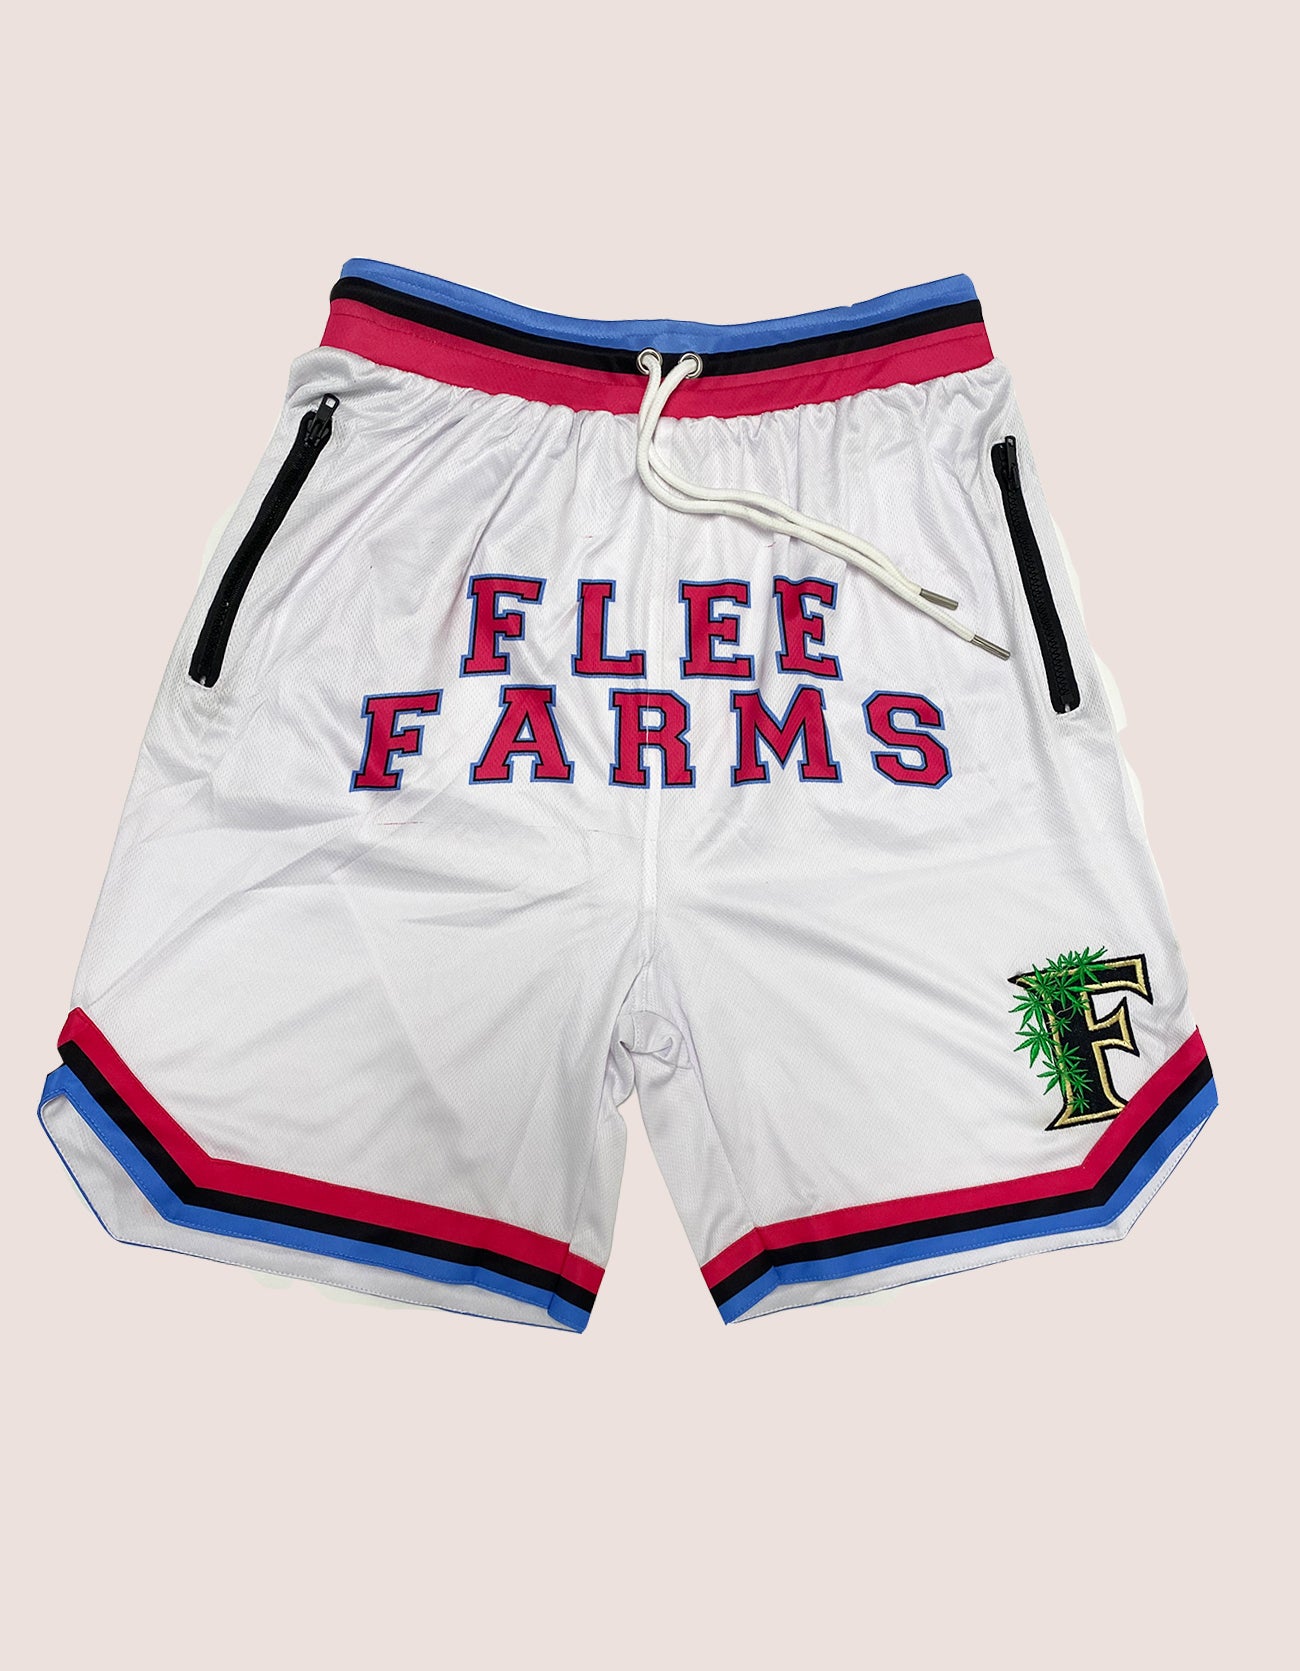 Flee Farms BB shorts White Miami